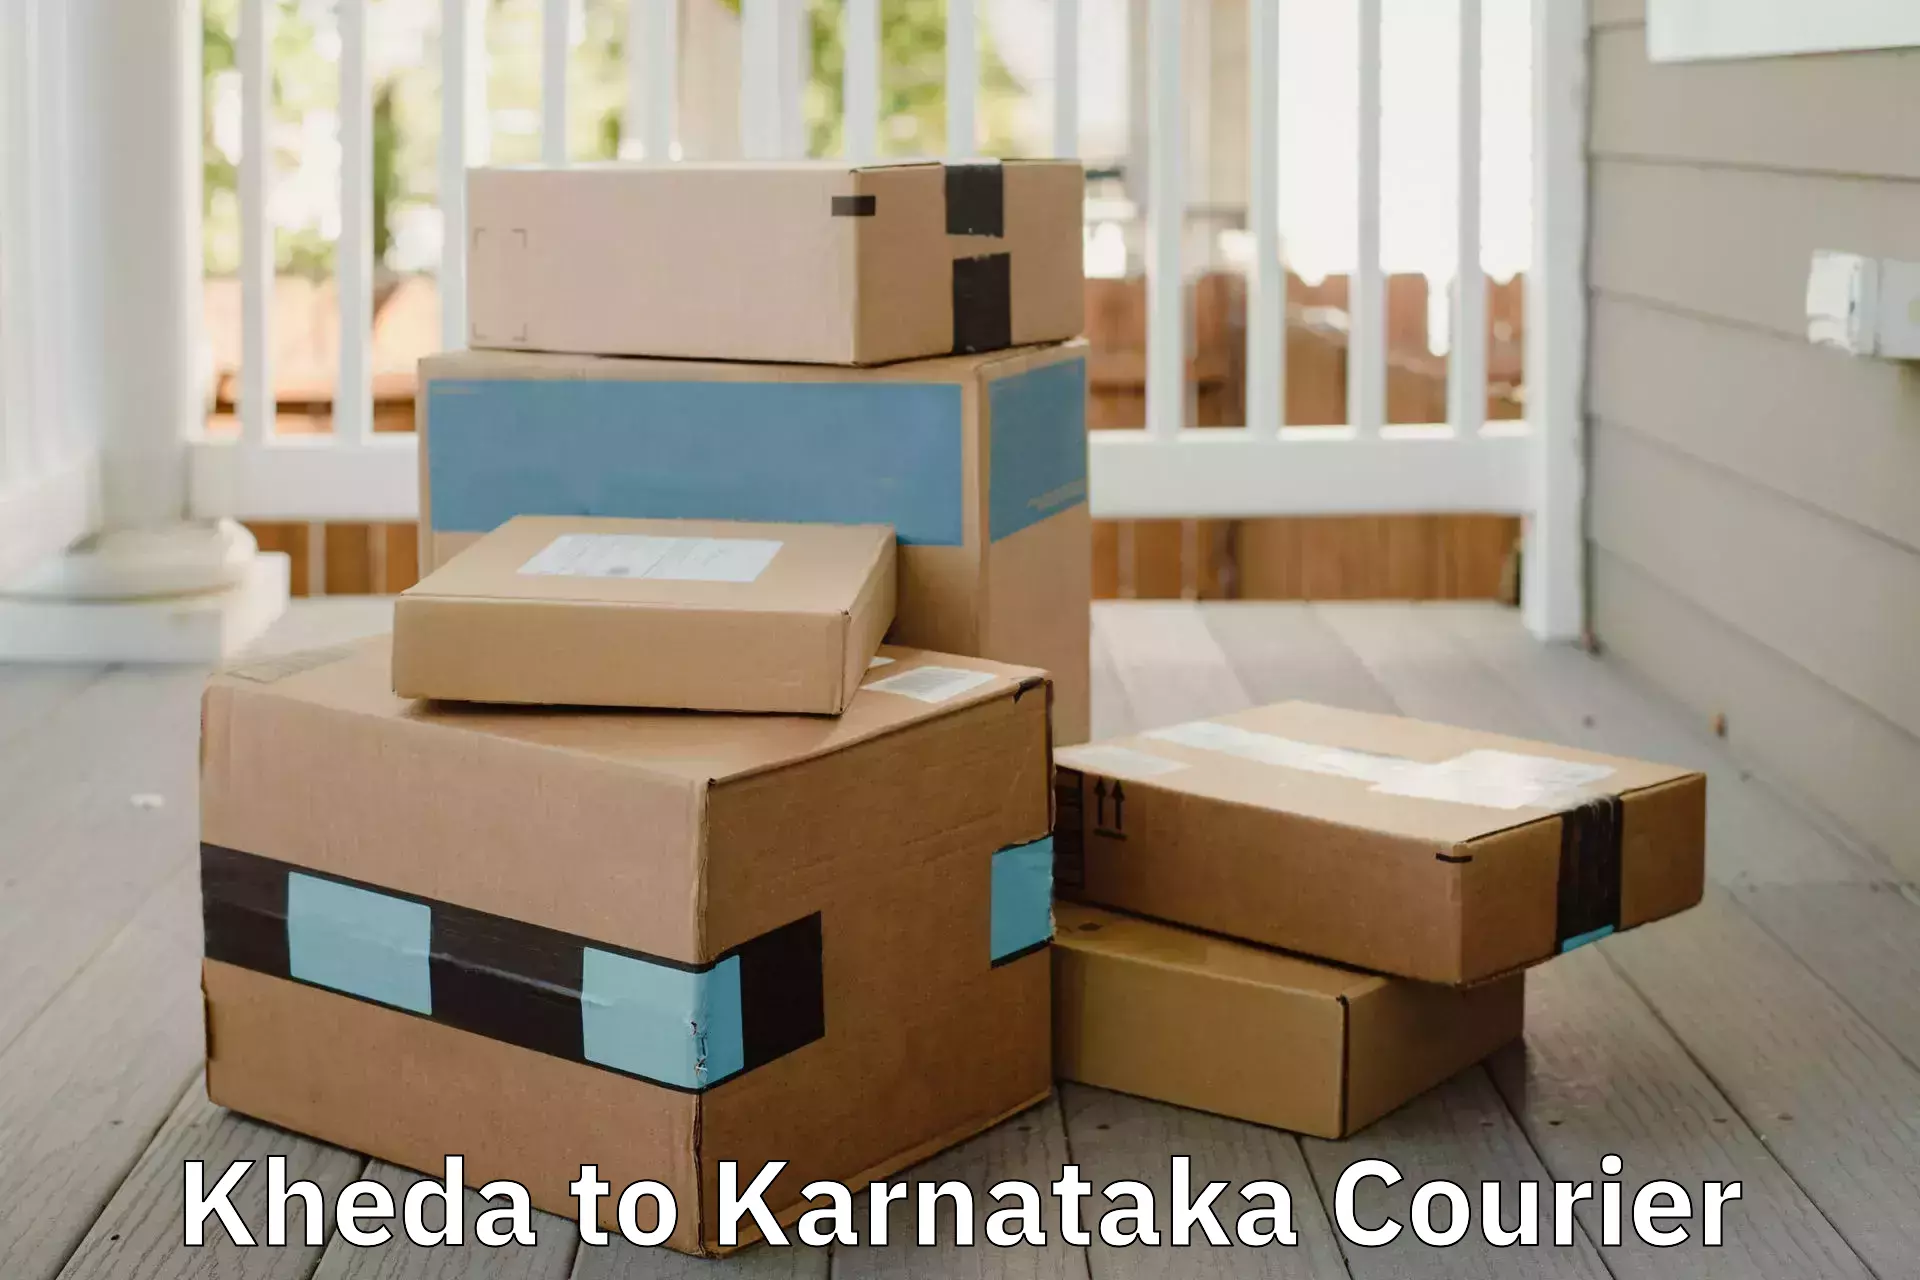 Residential moving experts Kheda to Karnataka